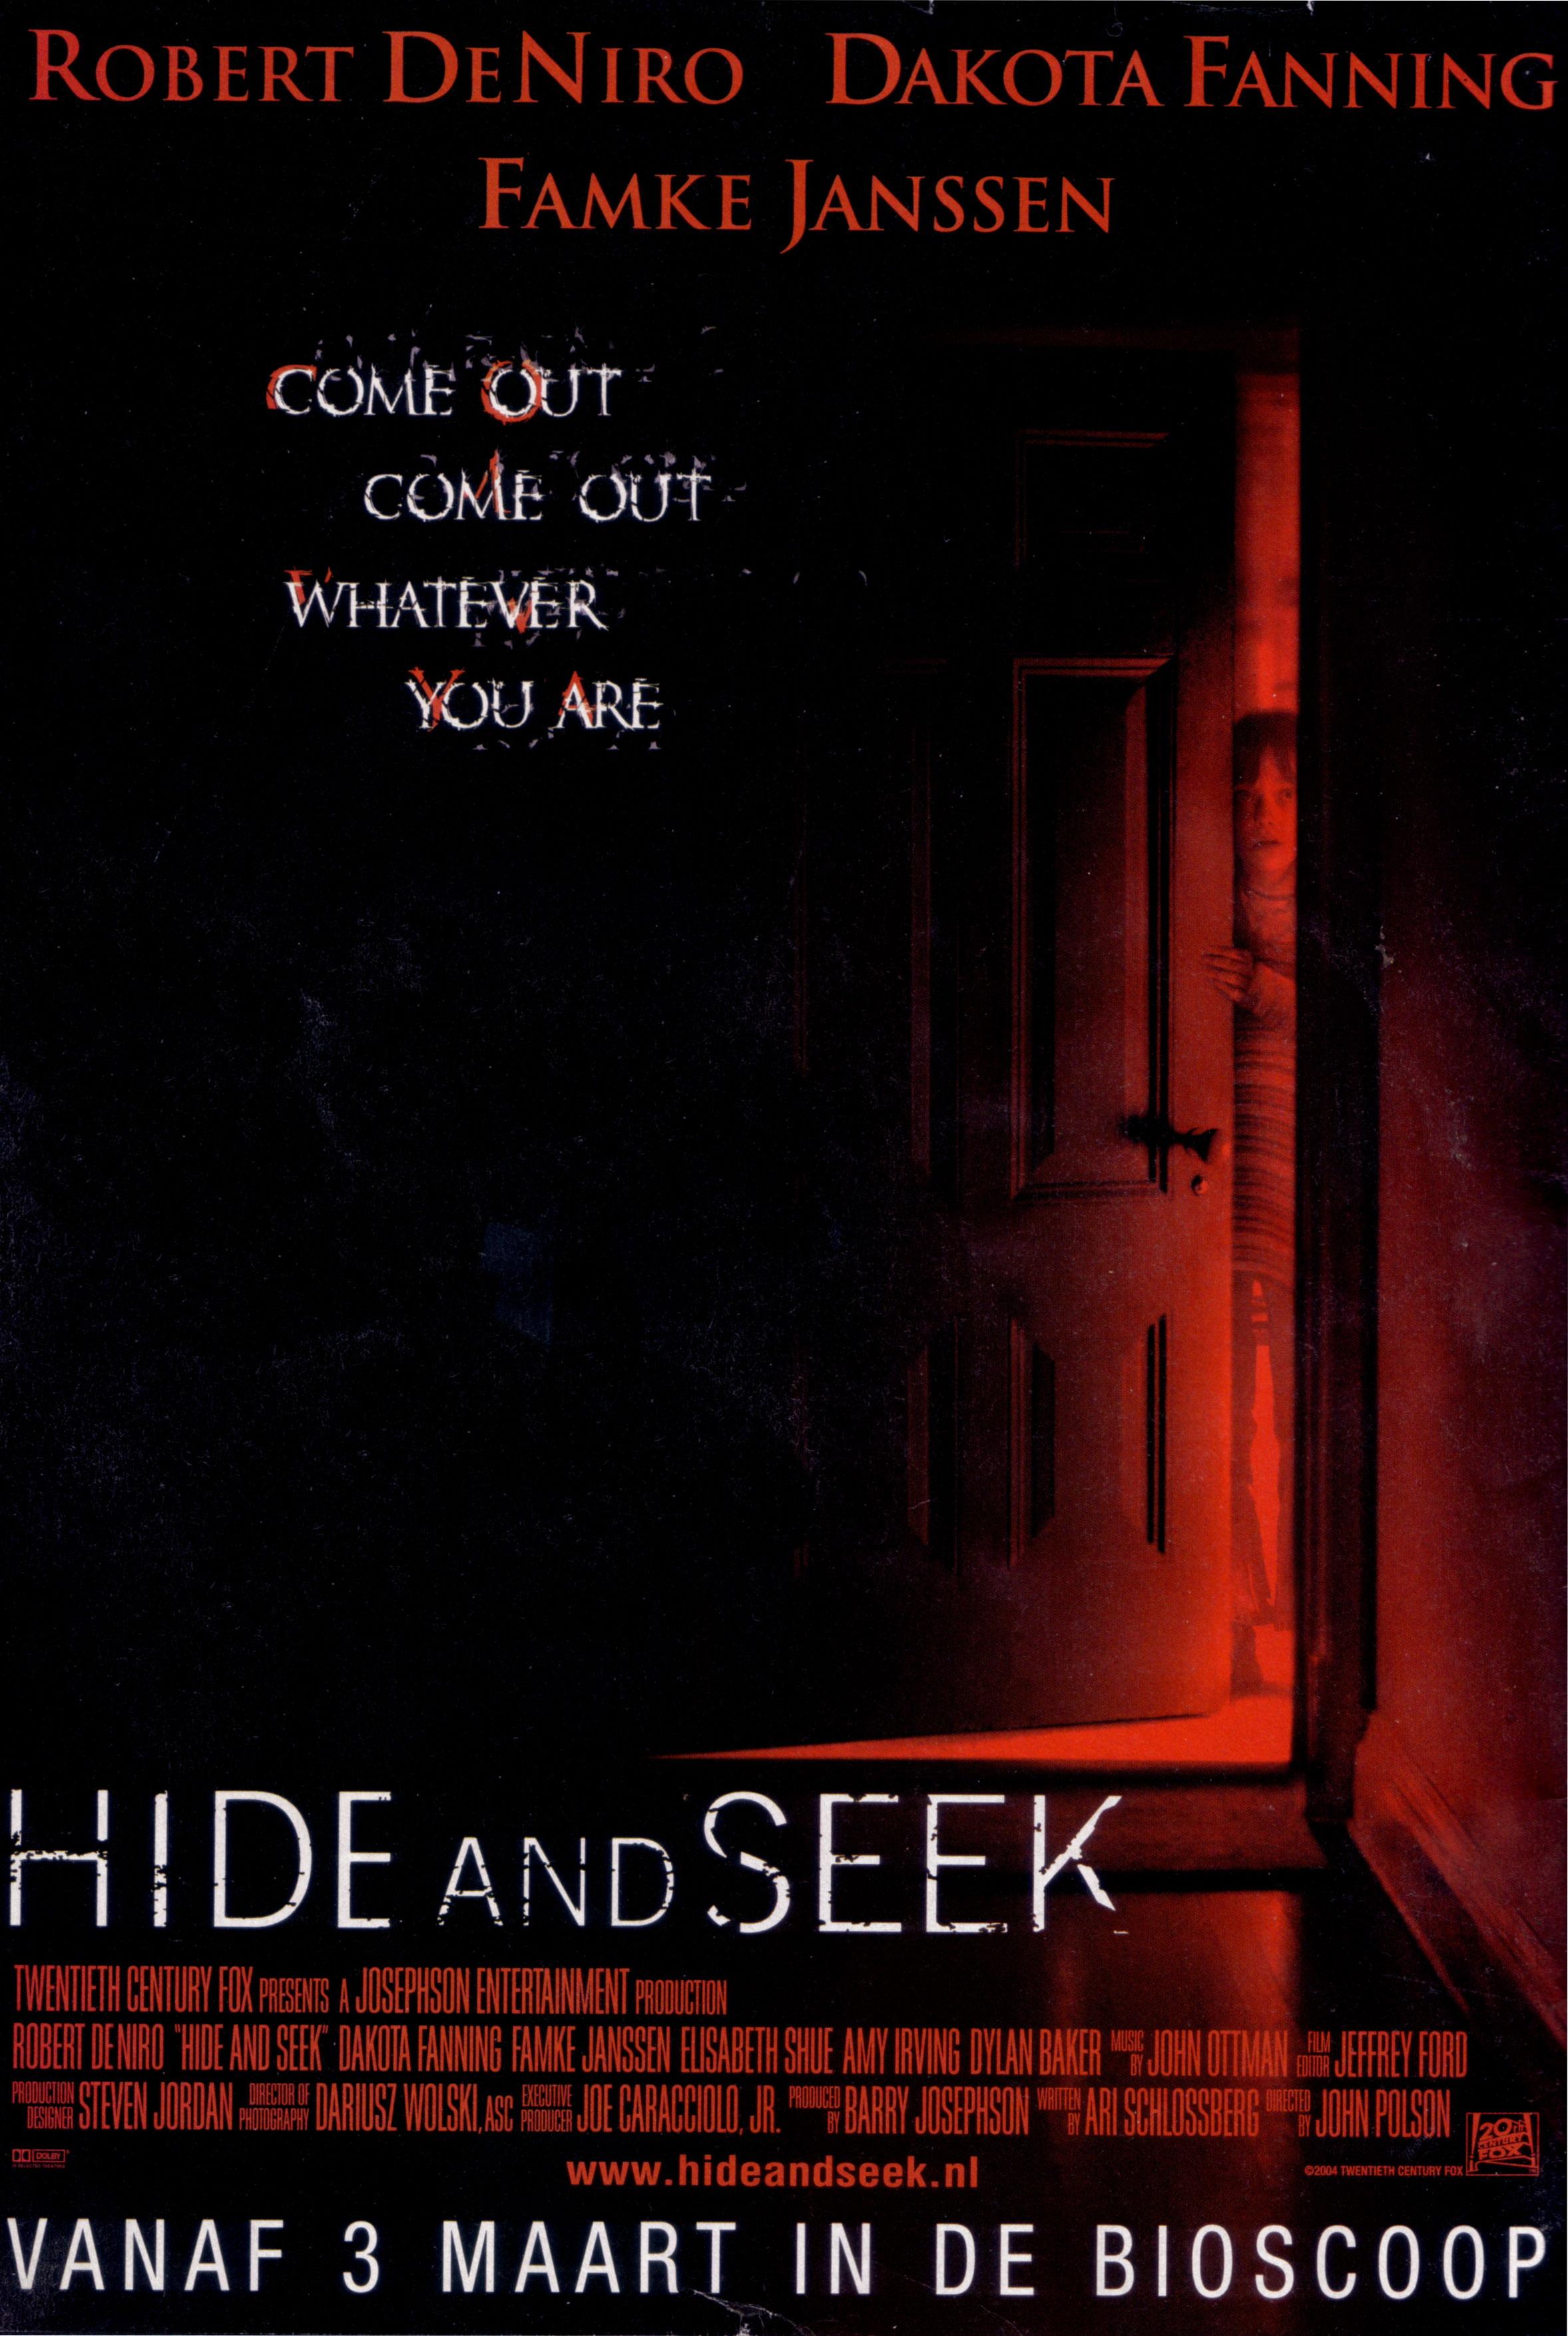 Hide and seek, 2005. Игра в ПРЯТКИ (2005) Постер. Hide and seek ПРЯТКИ игра. Игра в прятки 2005 отзывы